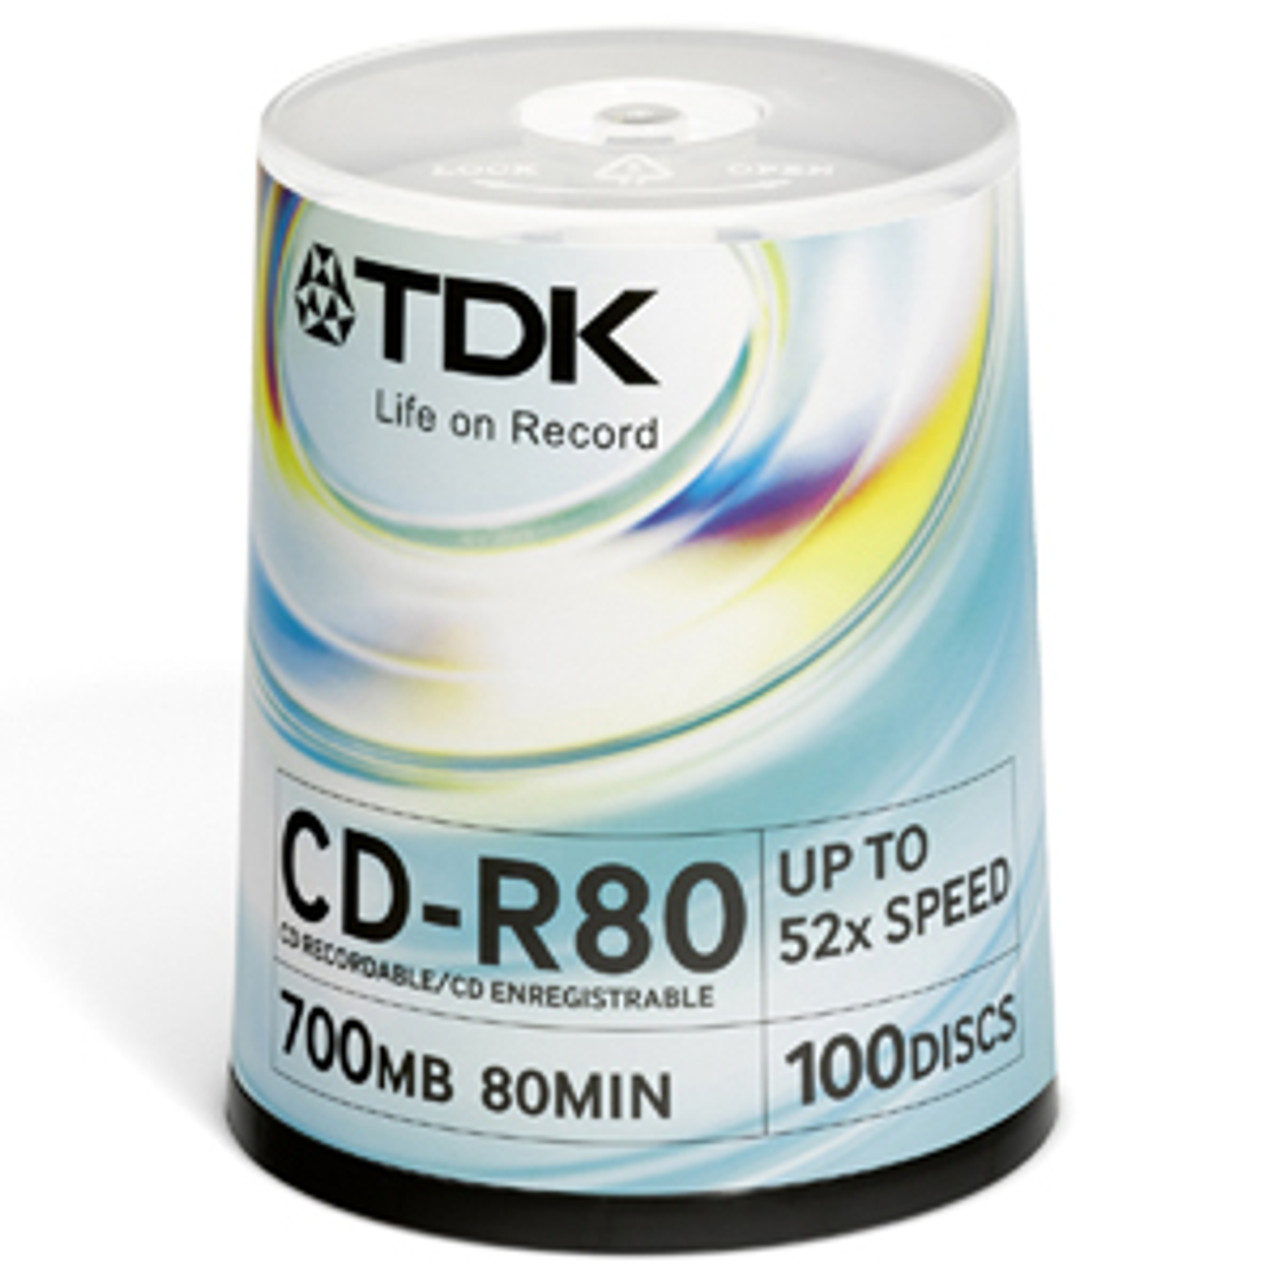 48760 - TDK 52x CD-R Media - 700MB - 120mm Standard - 100 Pack Spindle